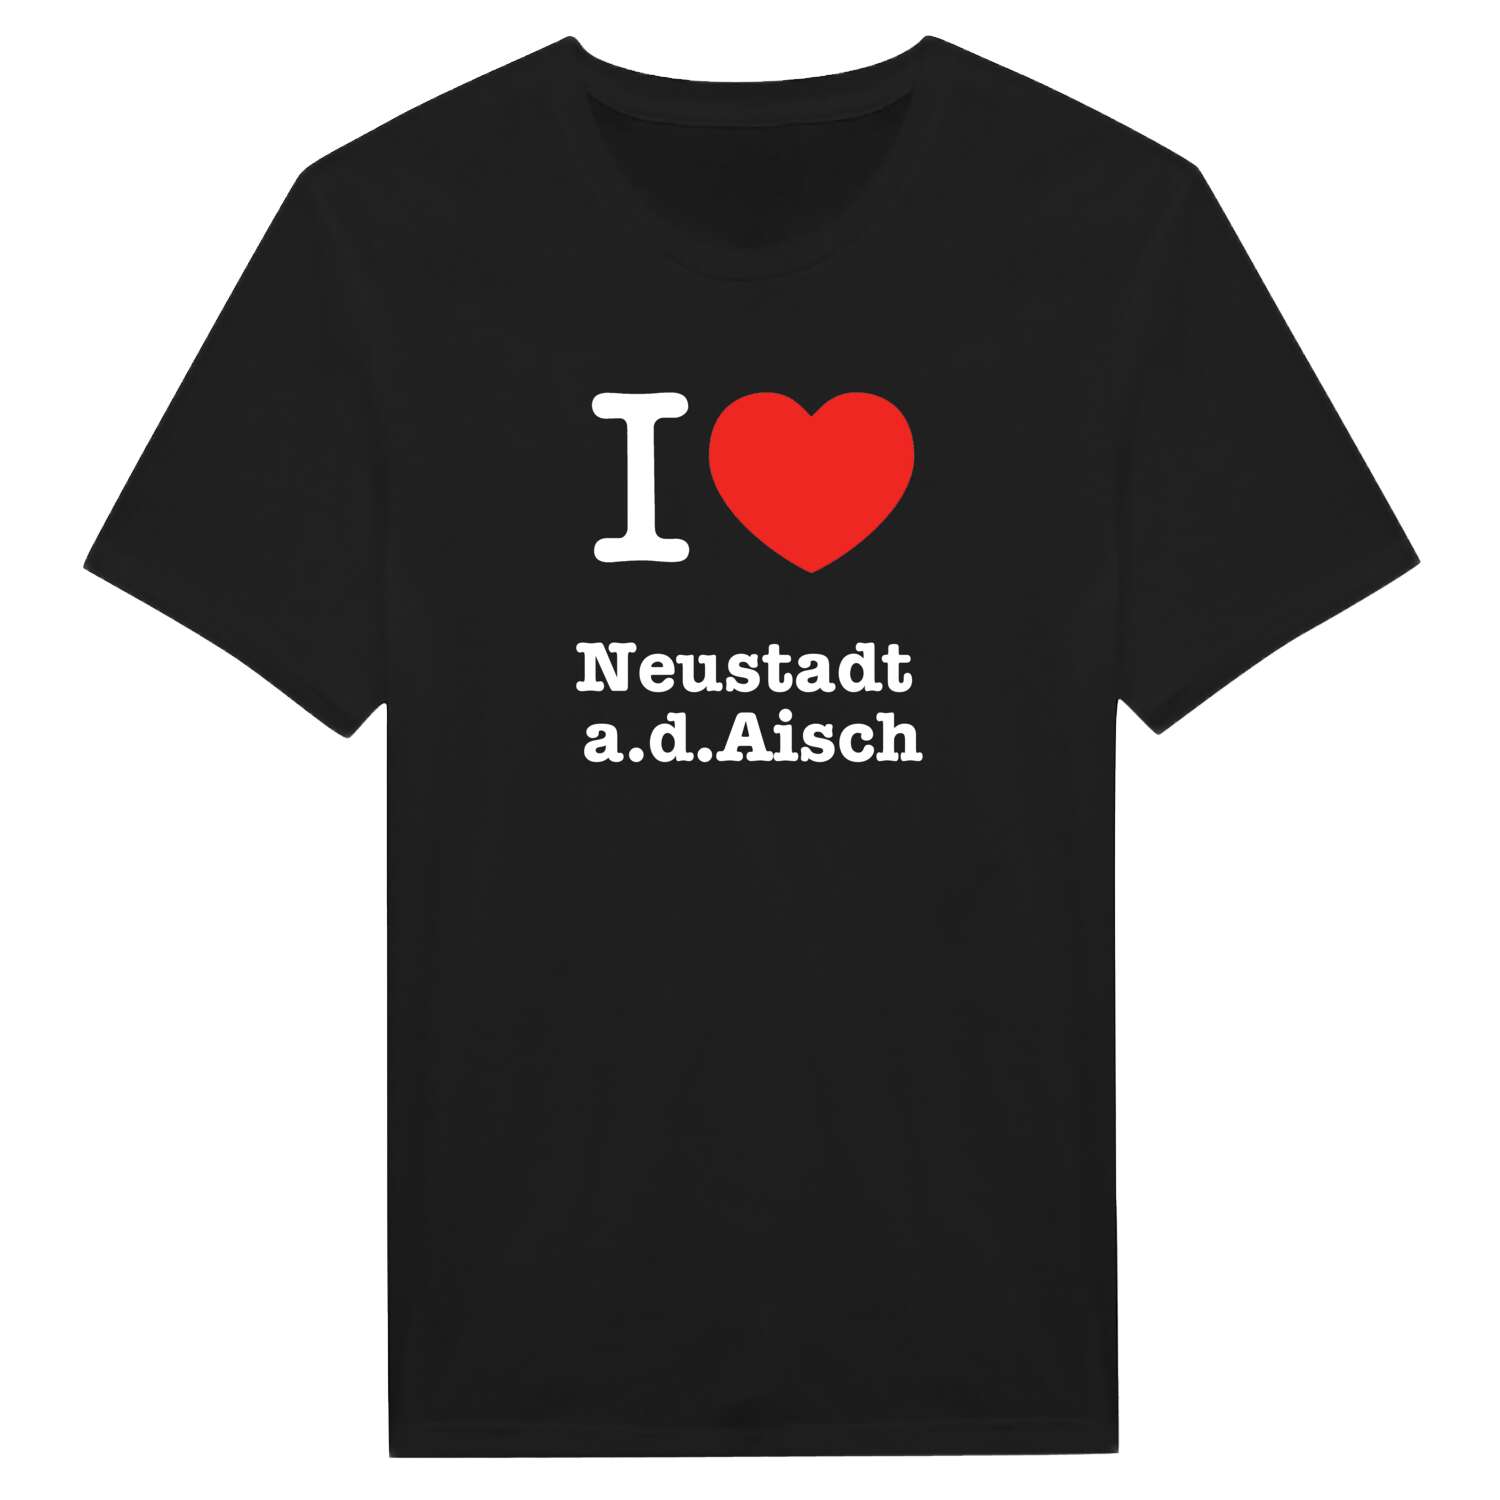 Neustadt a.d.Aisch T-Shirt »I love«